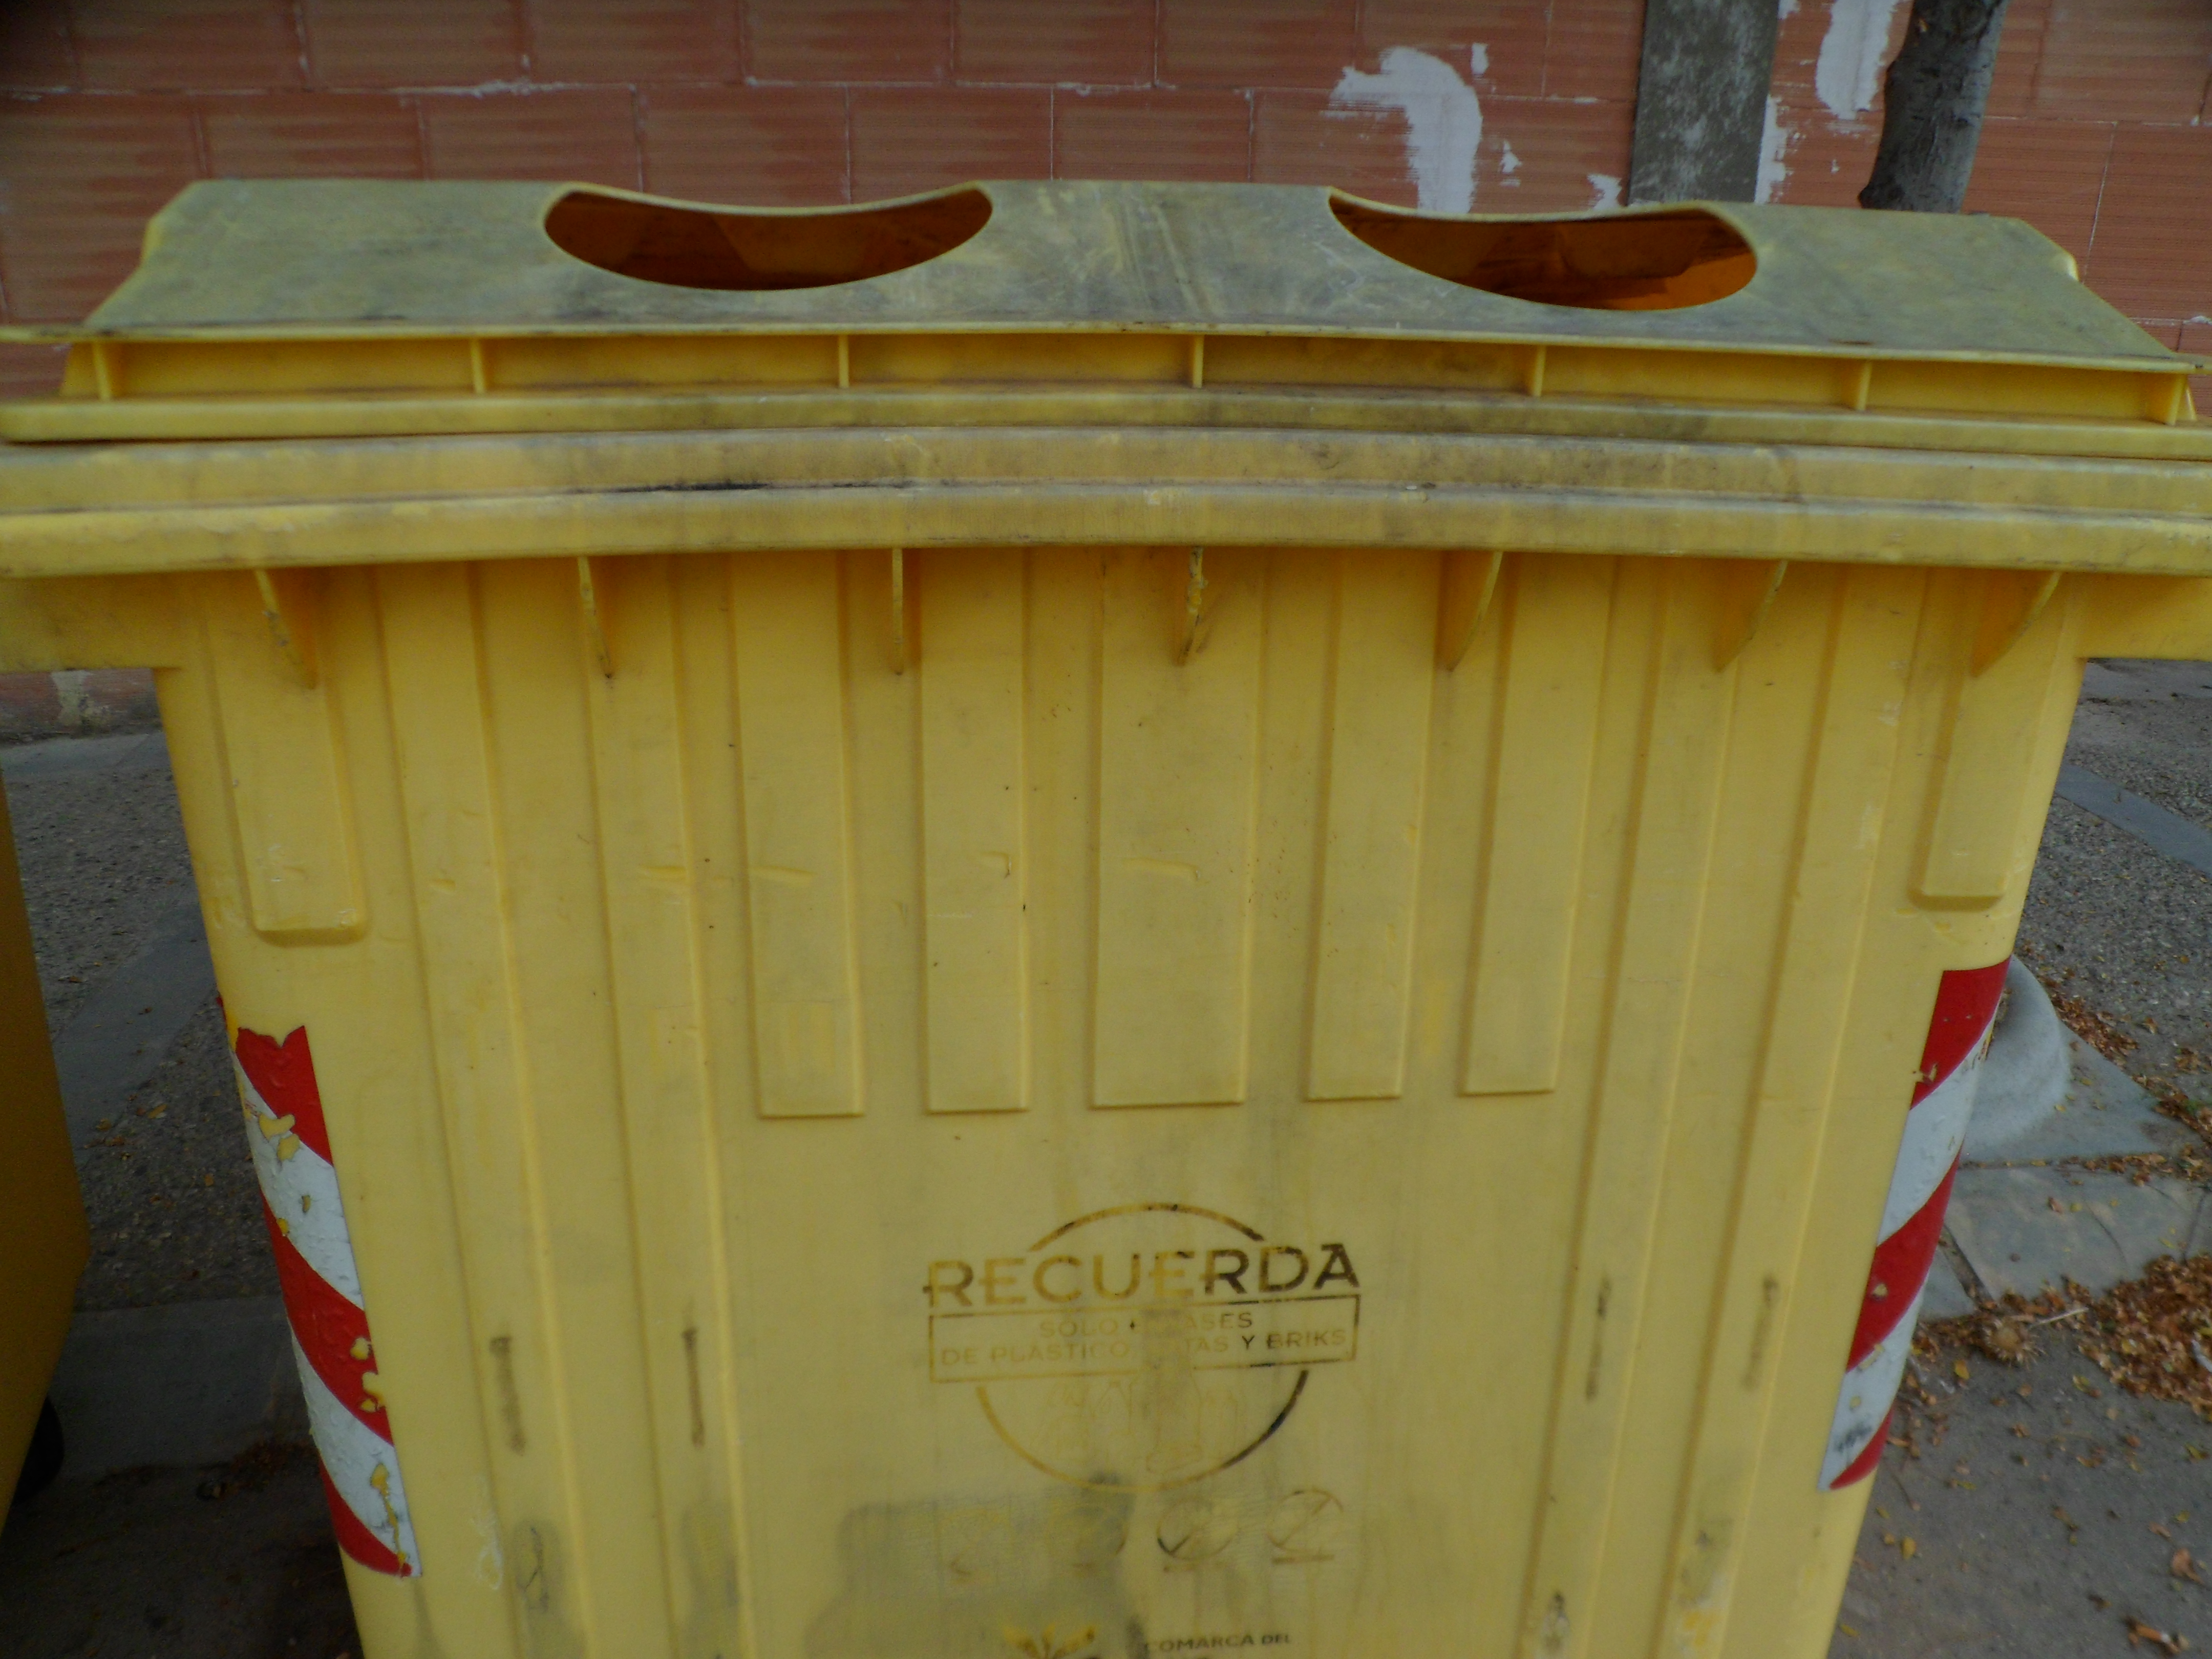 Denunciamos el “estado lamentable” de los contenedores de reciclaje amarillos y anuncia que preguntará por su mantenimiento a la Comarca